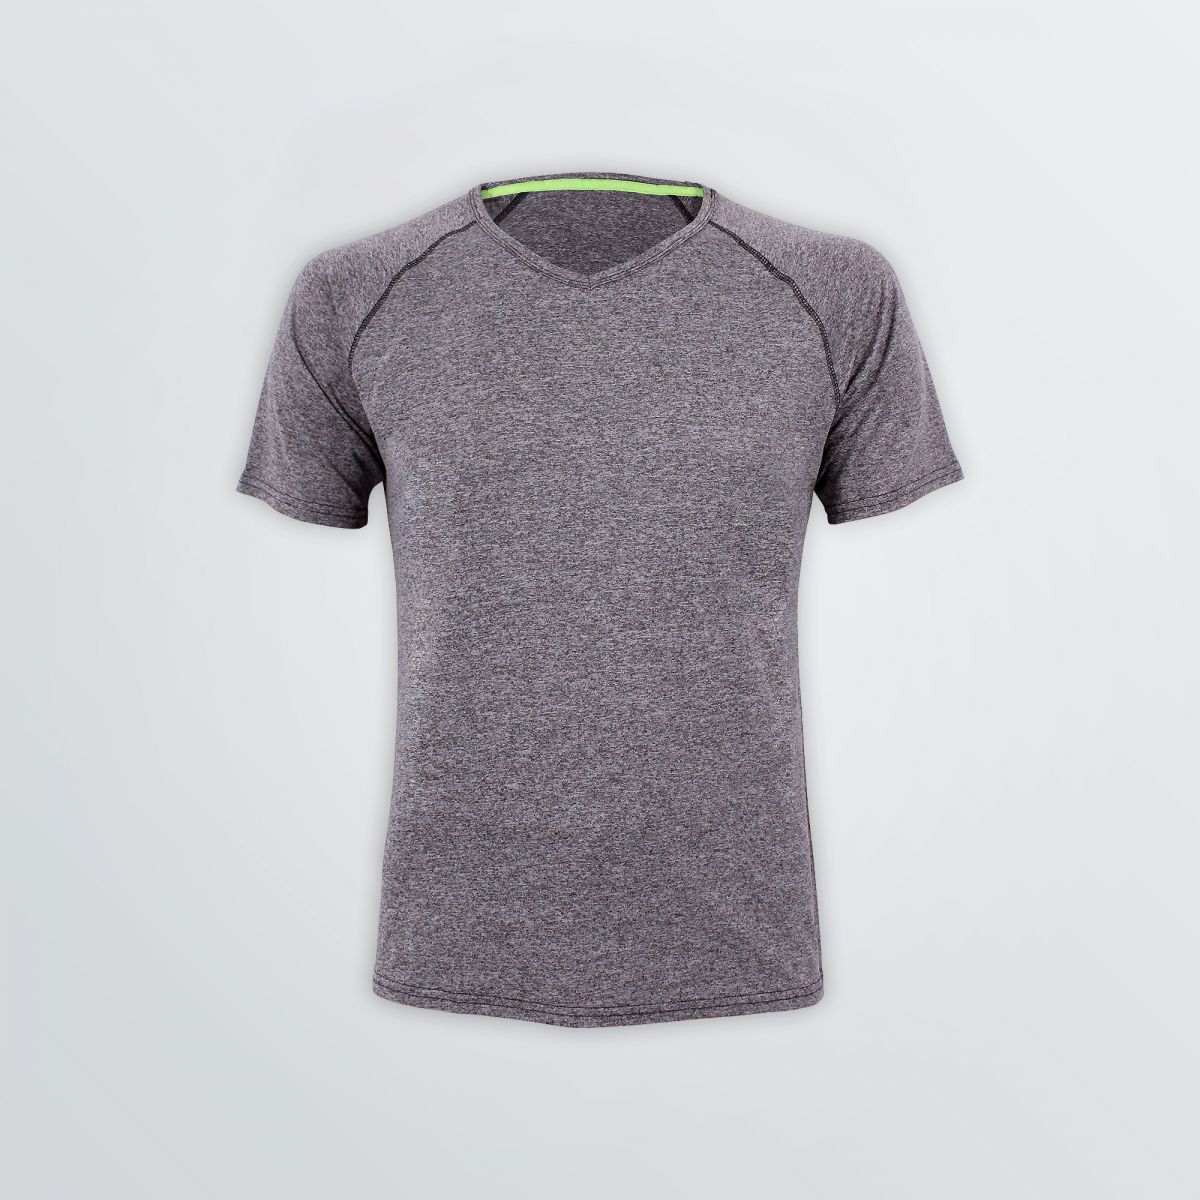 Atmungsaktives Street Tech Shirt zum Individualisieren als Produktbeispiel grau-melange mit grünem Neckband - Frontansicht